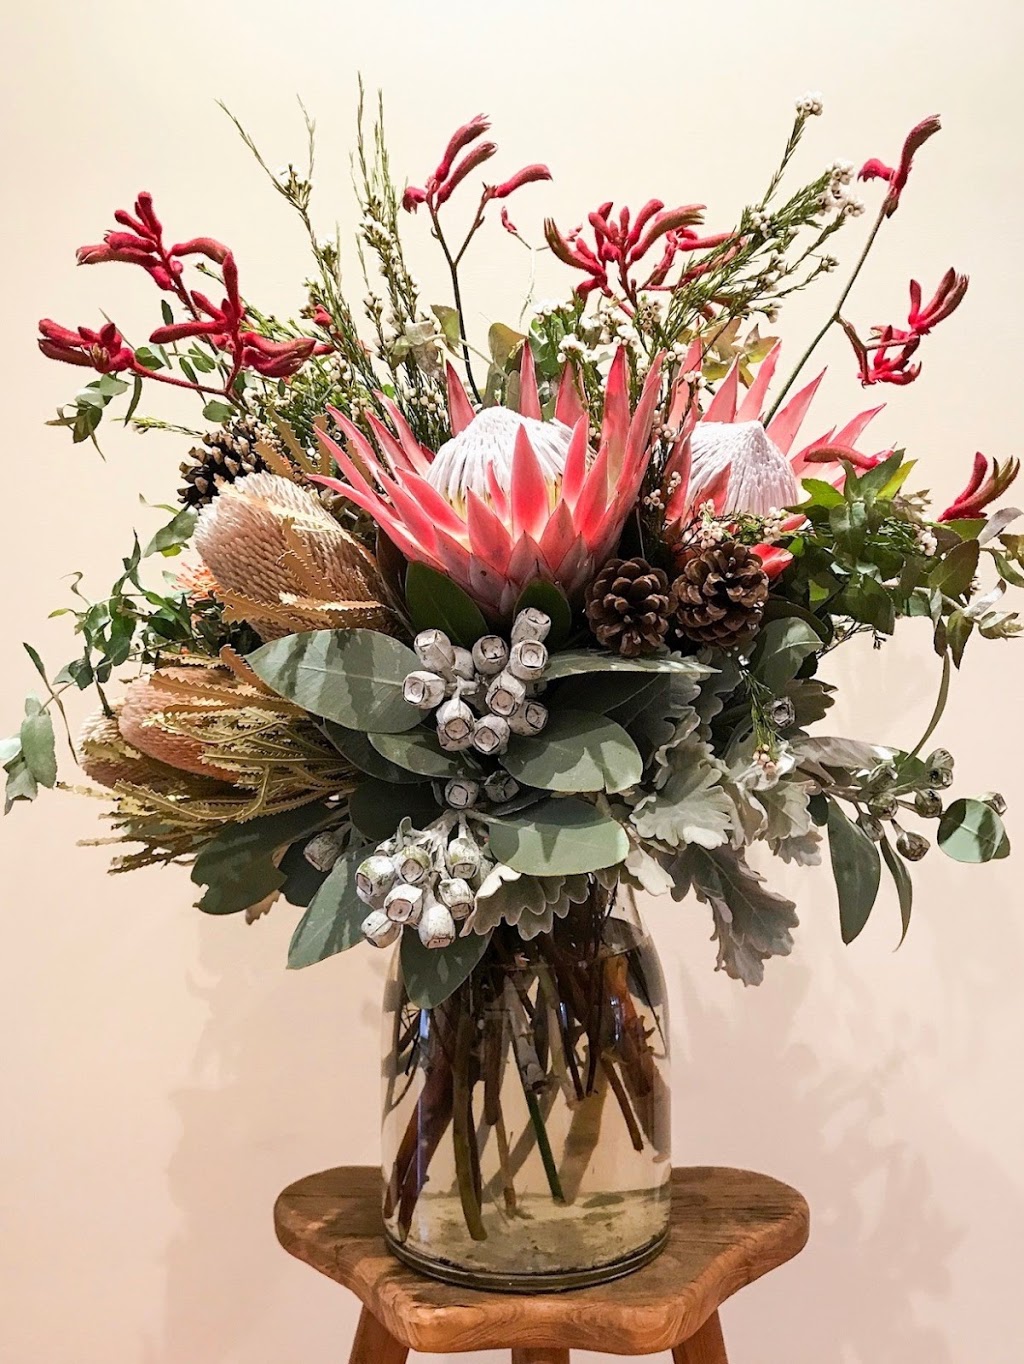 Alices flowers & designs | 22 Fitzwilliam St, Kew VIC 3101, Australia | Phone: 0488 993 372